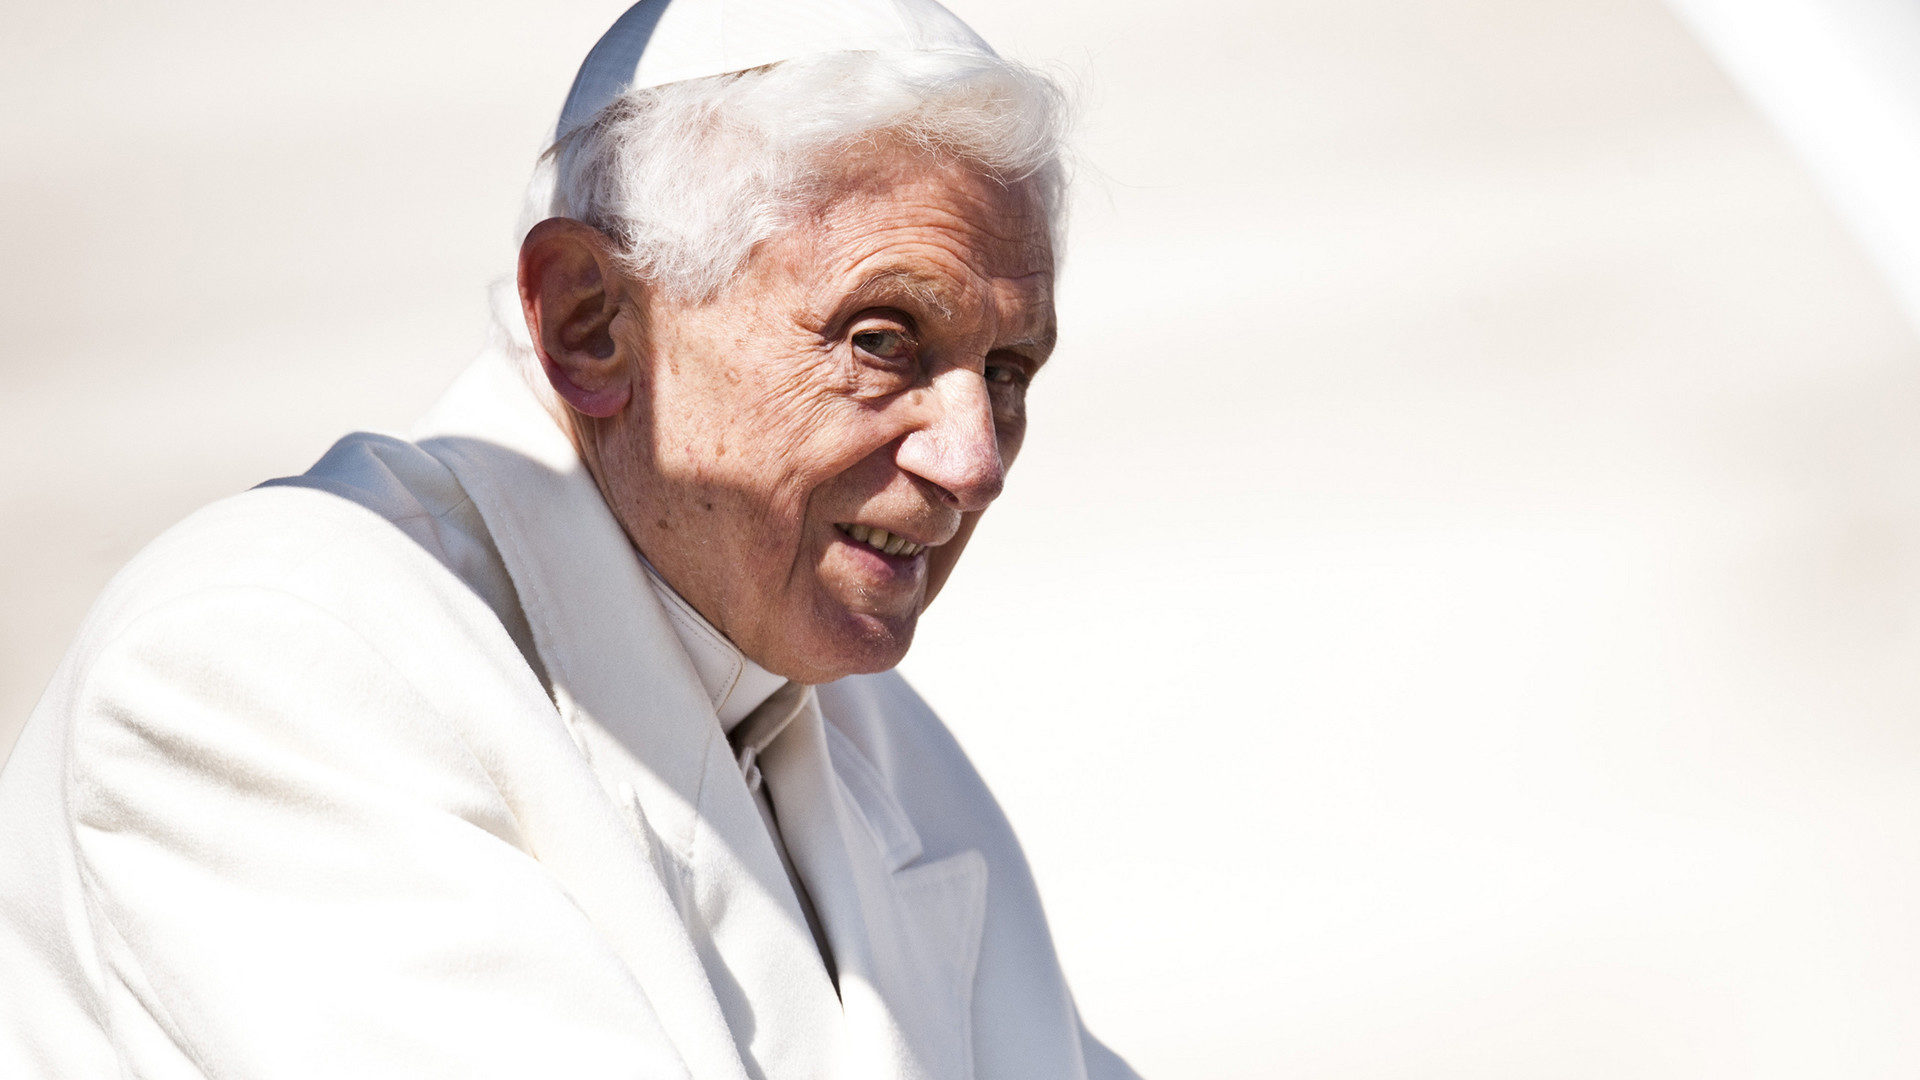 Le pape émérite Benoît XVI souffre d'érésipèle au visage (Photo: flickr/catholicism/CC BY-NC-SA 2.0)